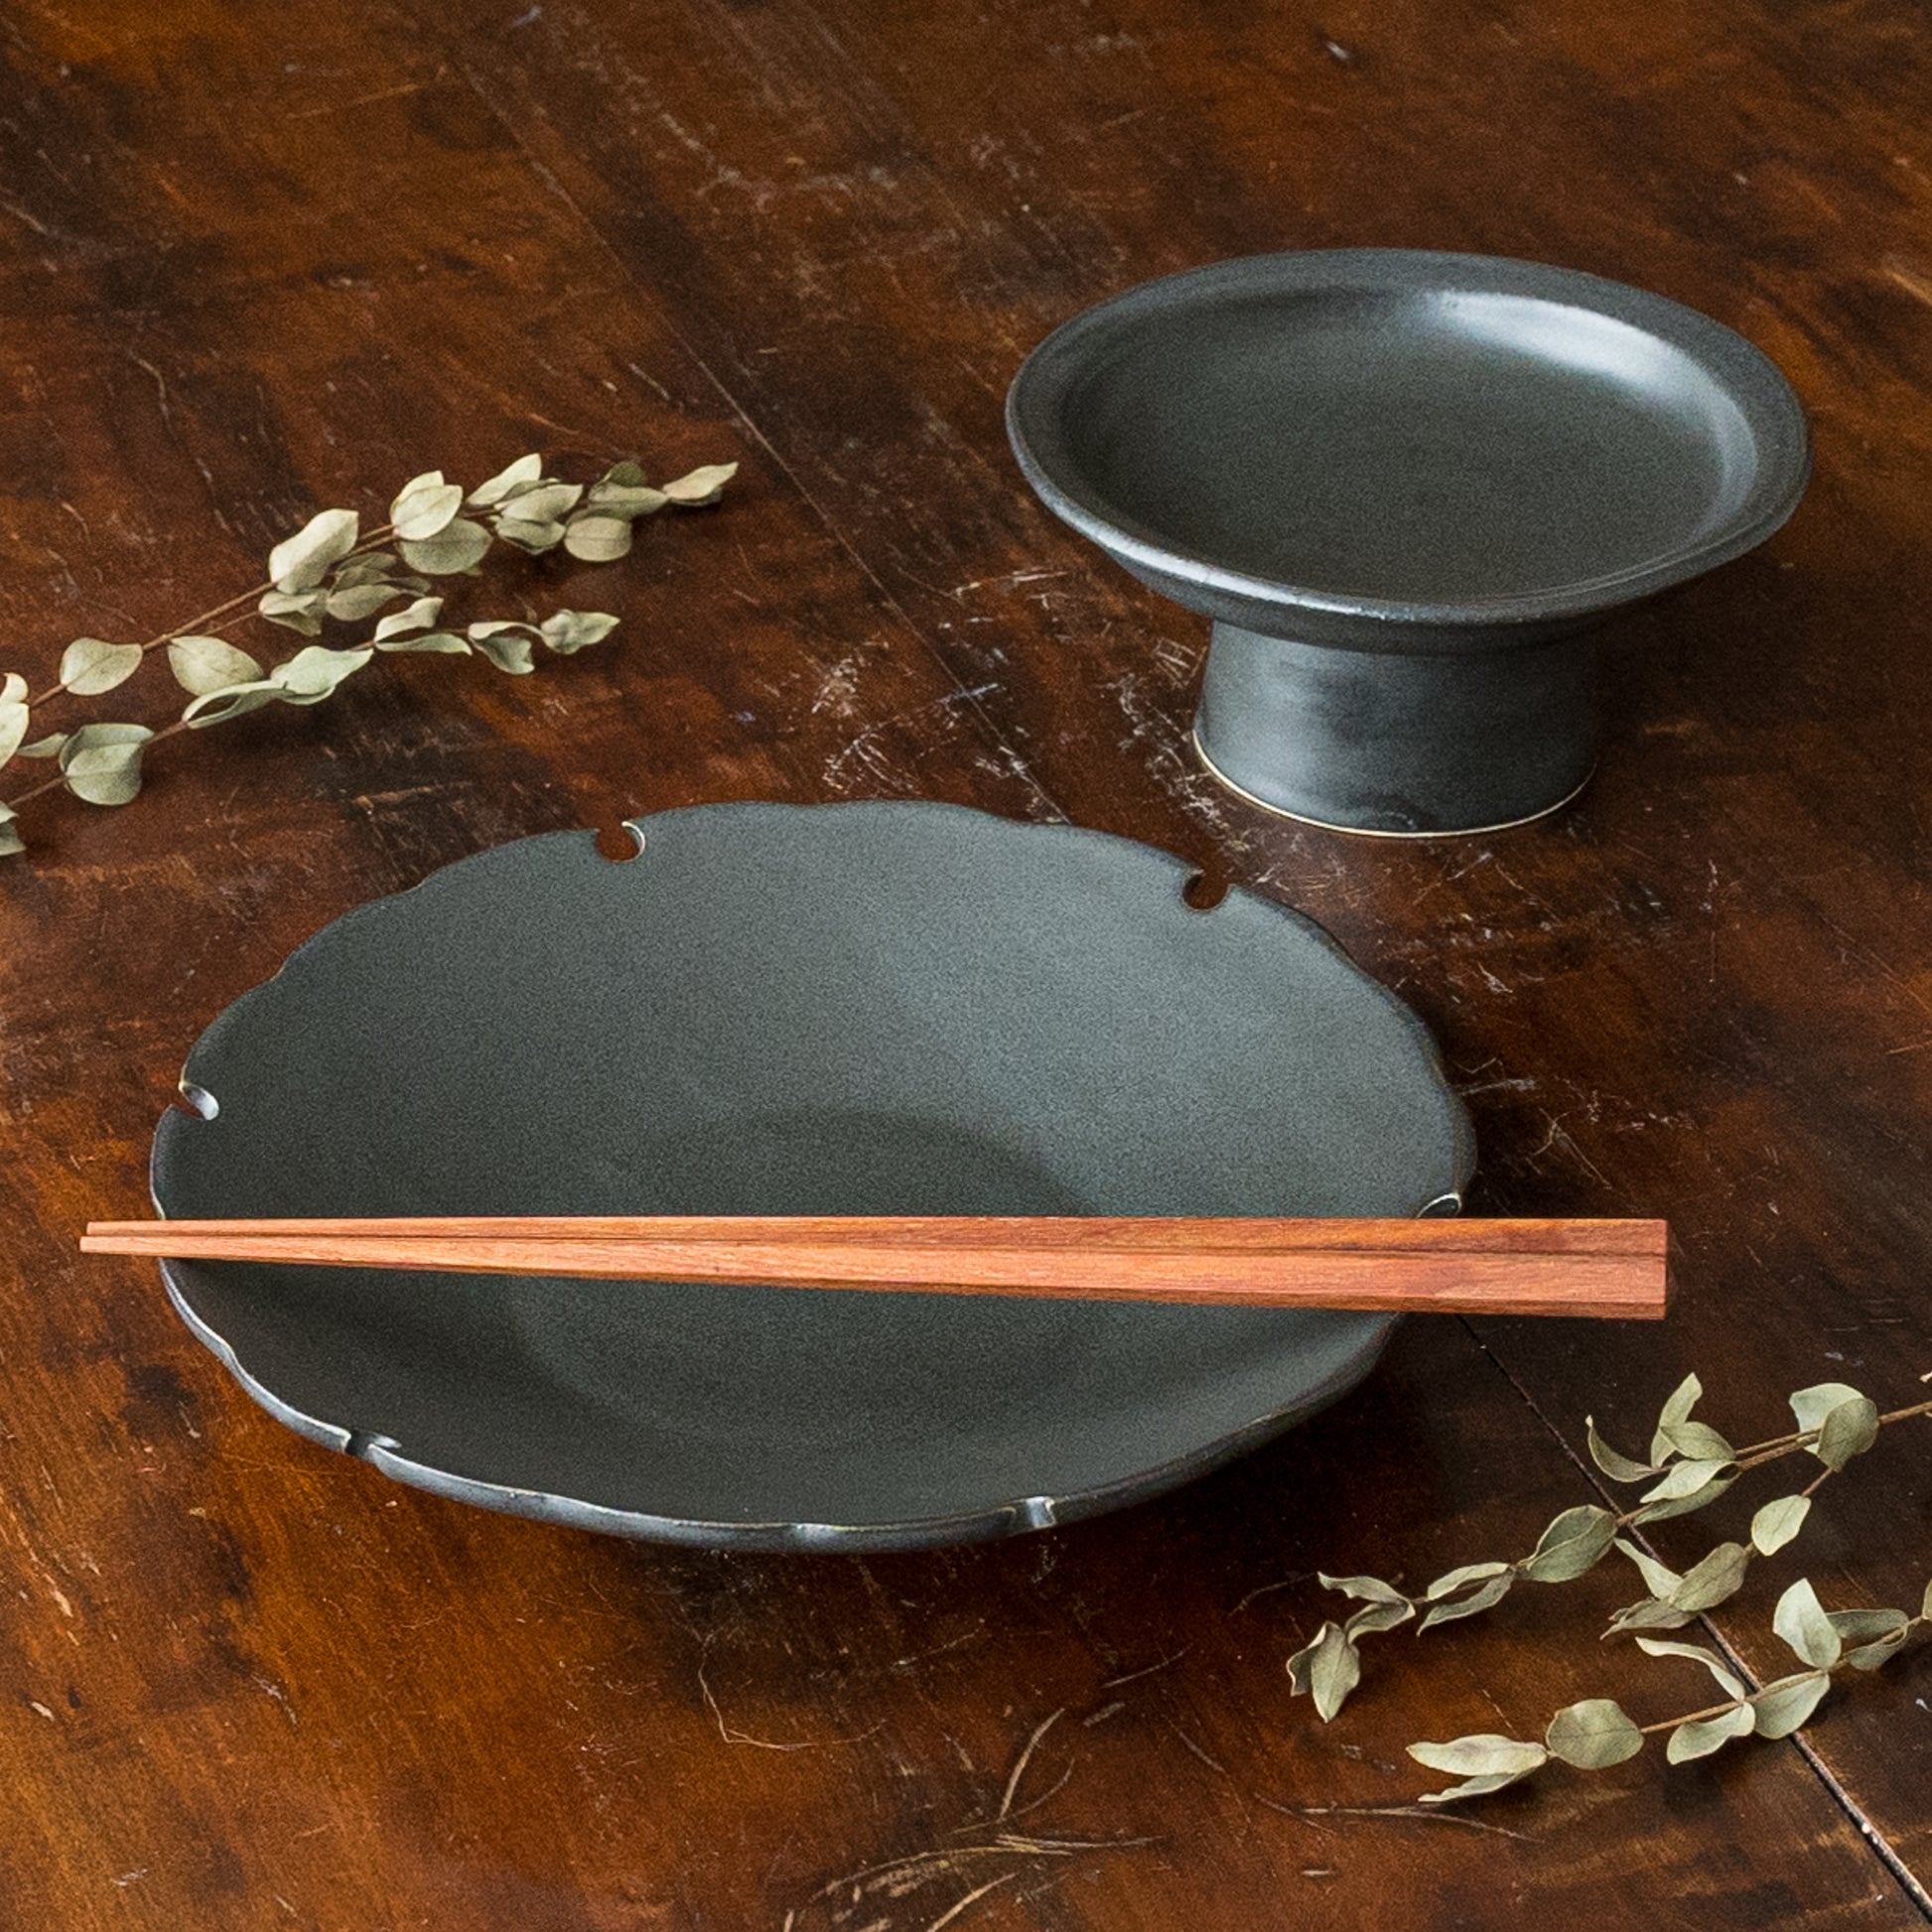 食卓を上品に彩ってくれるyoshida potteryの高杯皿と雪輪皿